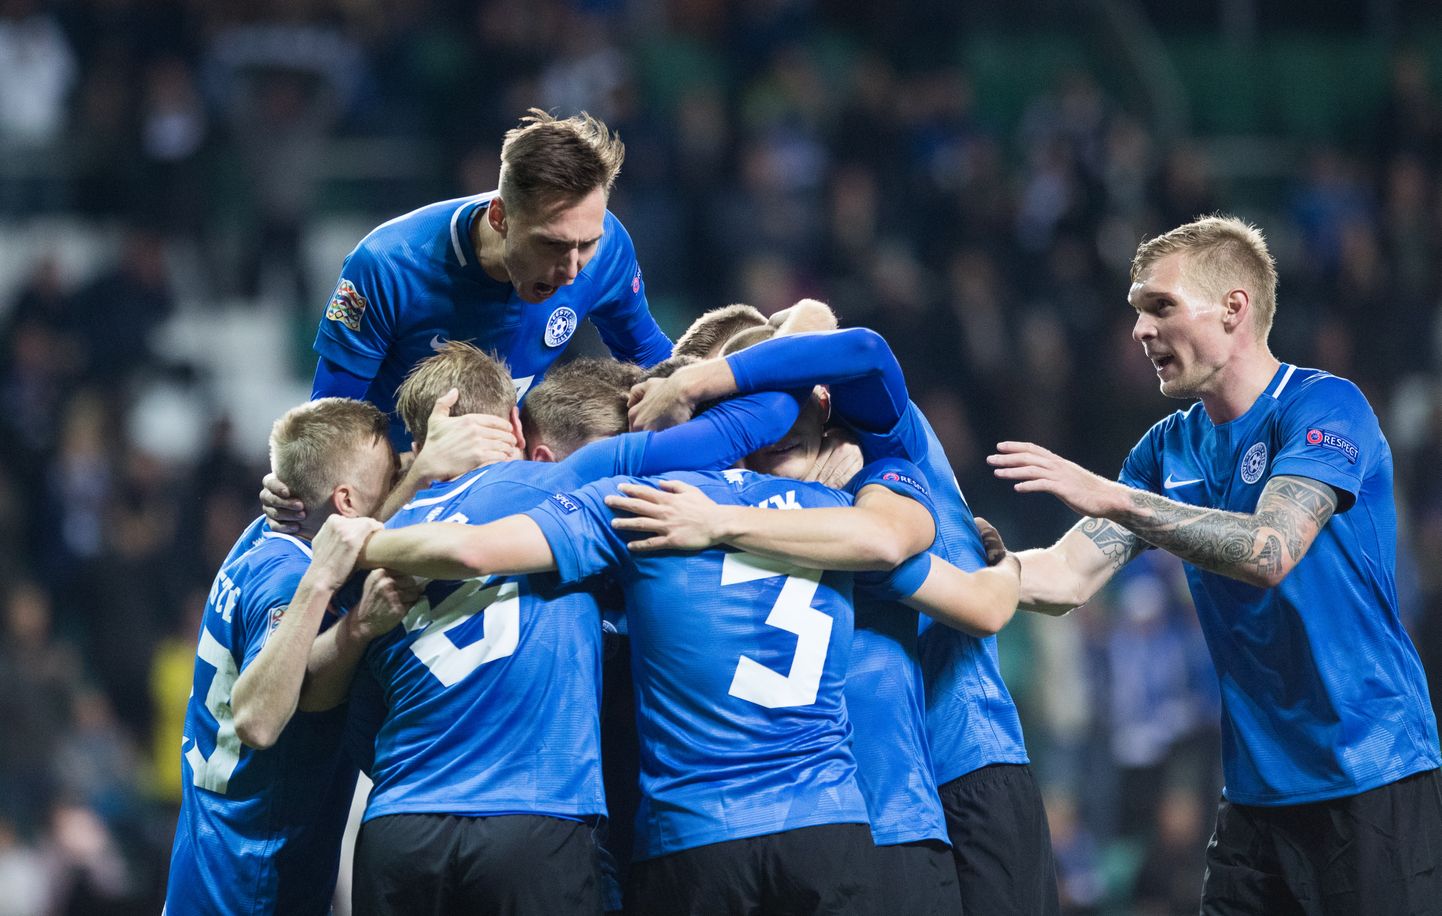 Eesti jalgpallikoondis saab edaspidi võõrustada ka kolmandatest riikidest pärit meeskondi.